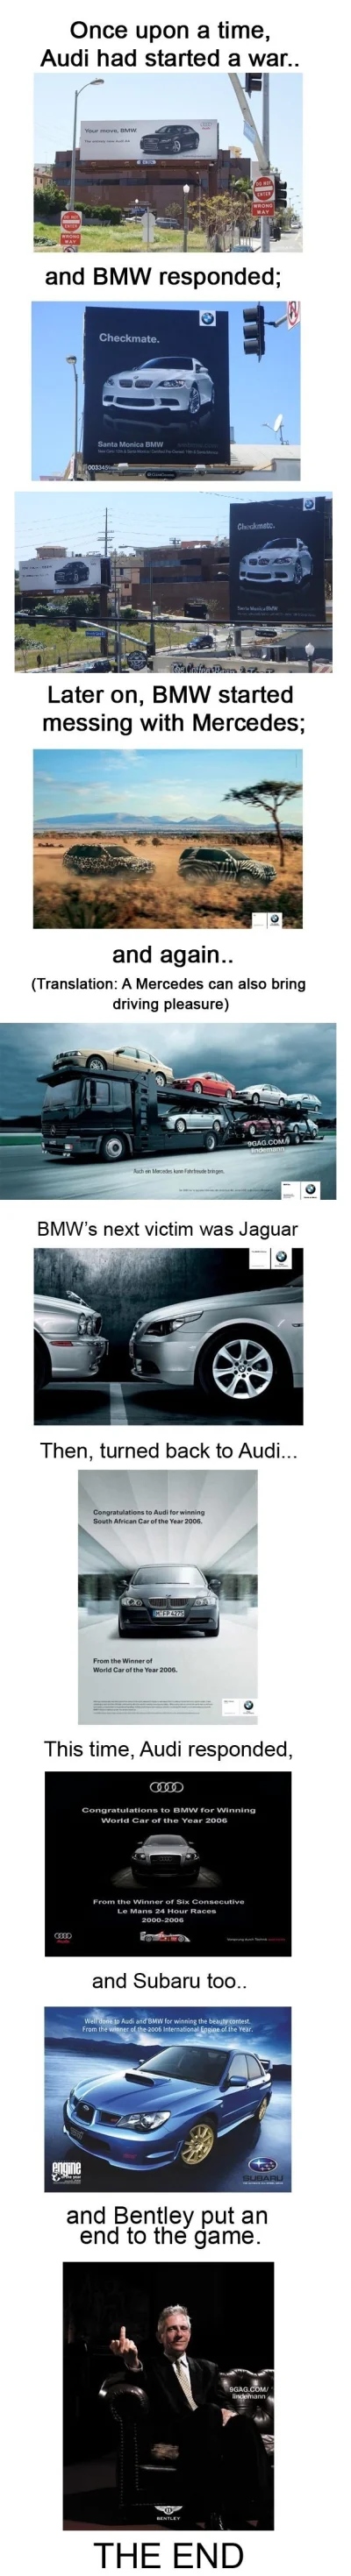 o.....y - @sorek: 
Czyżby kolejny epizod wojny BMW z Audi (którą nawet w GTA sparodi...